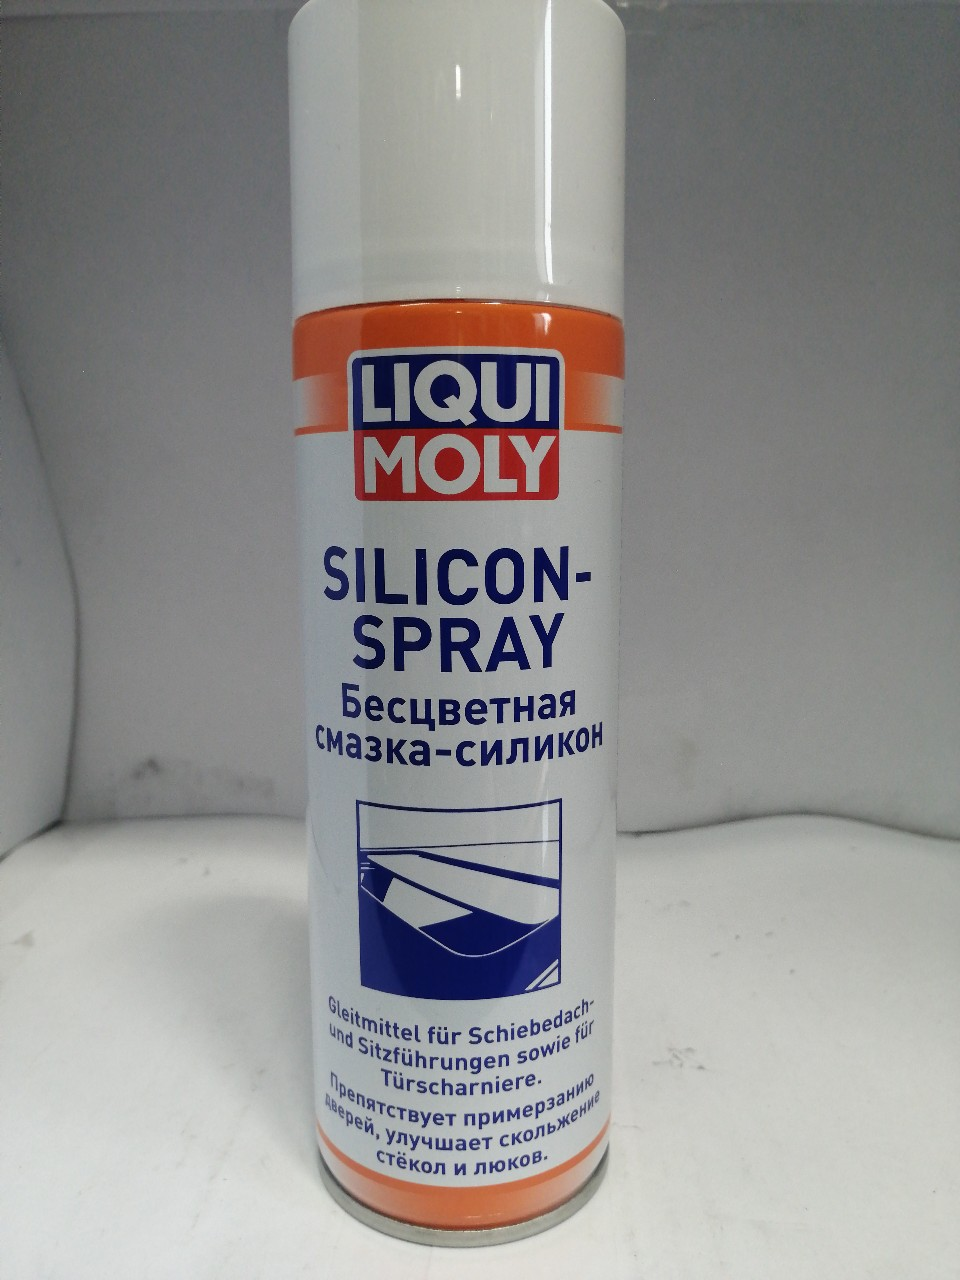 Купить запчасть LIQUI MOLY - 3955 3955 LiquiMoly Бесцветная смазка-силикон Silicon-Spray (0,3л)